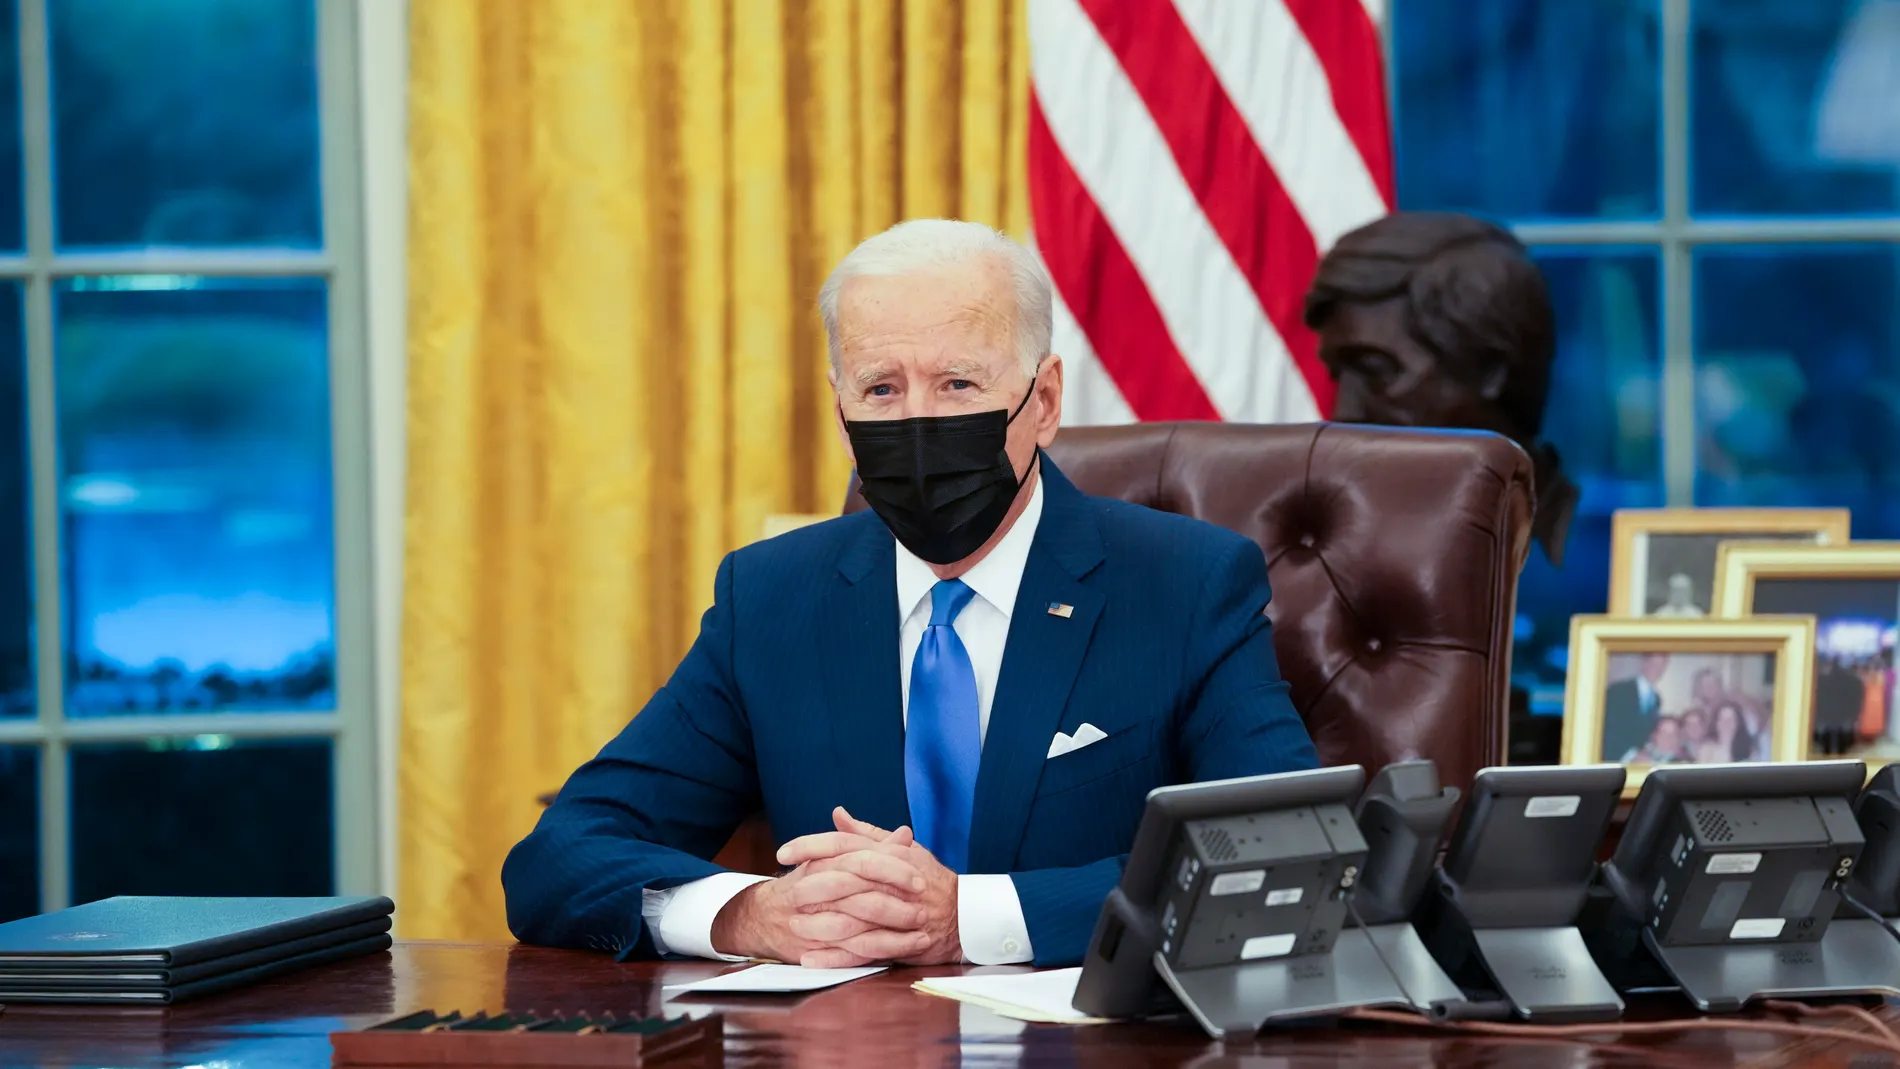 El presidente Joe Biden anunció una nueva batería de órdenes ejecutivas relacionadas con la inmigración